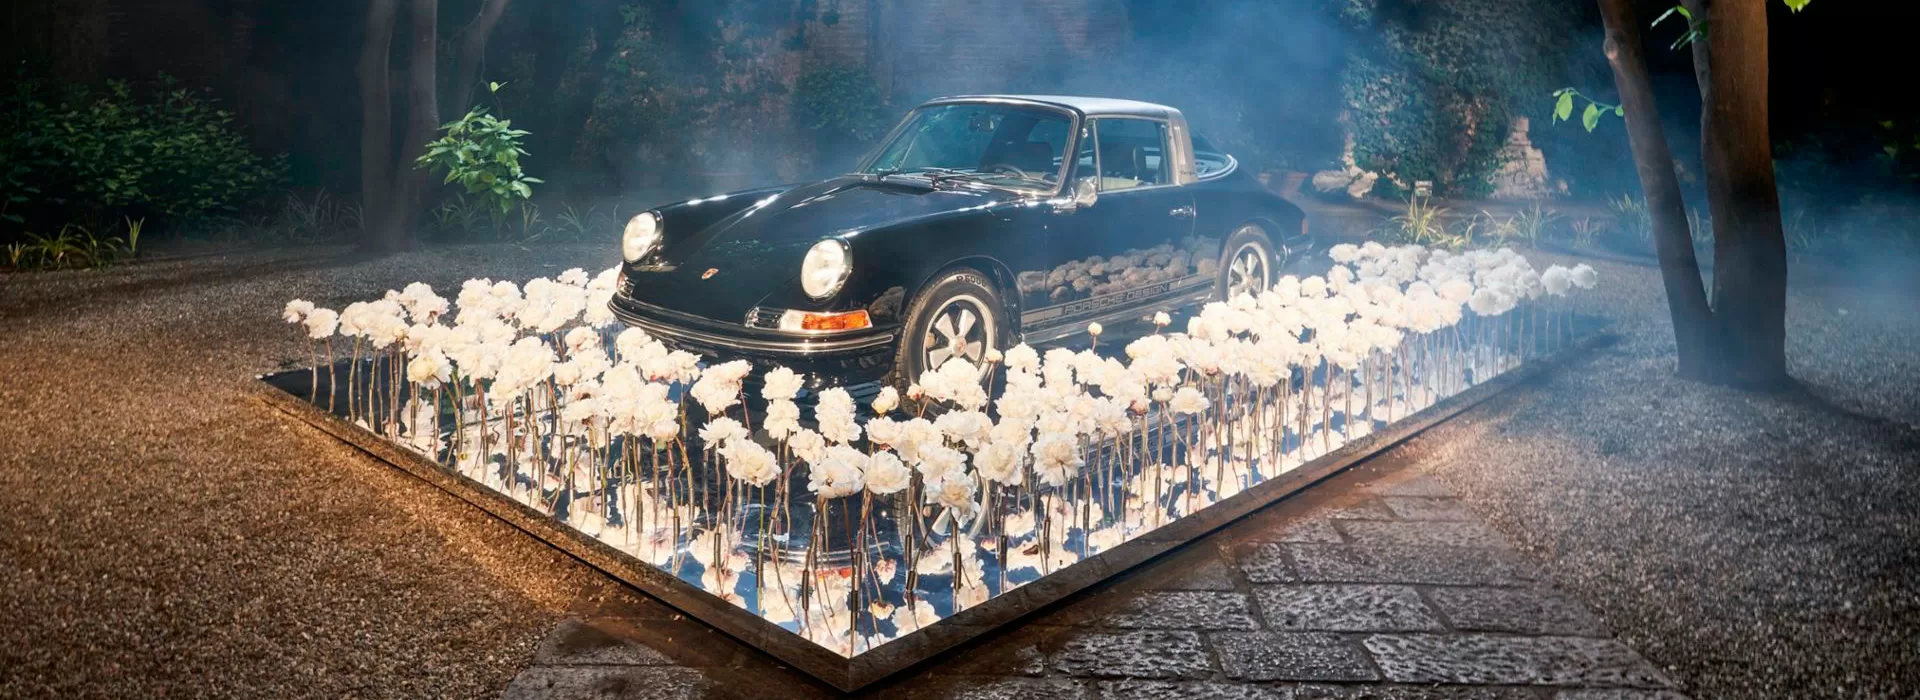 Porsche представила ботаническое произведение на Миланской неделе дизайна